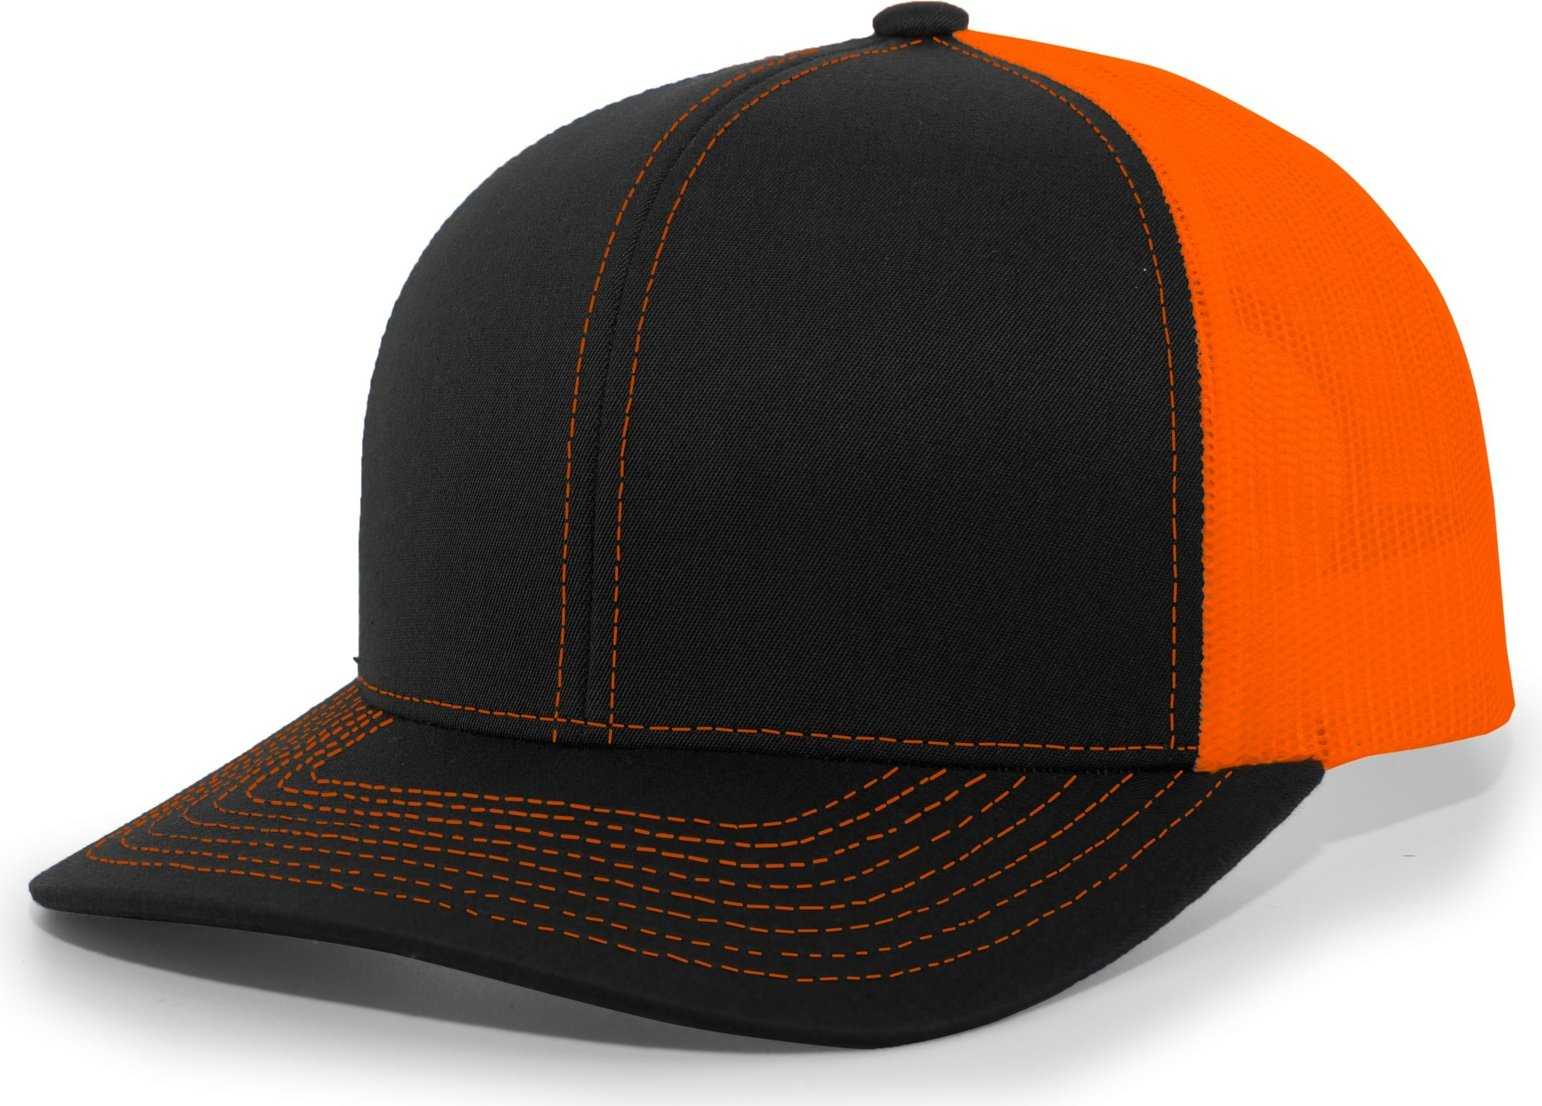 Pacific Headwear 104C Trucker Snapback Cap - Black Neon Orange - HIT a Double